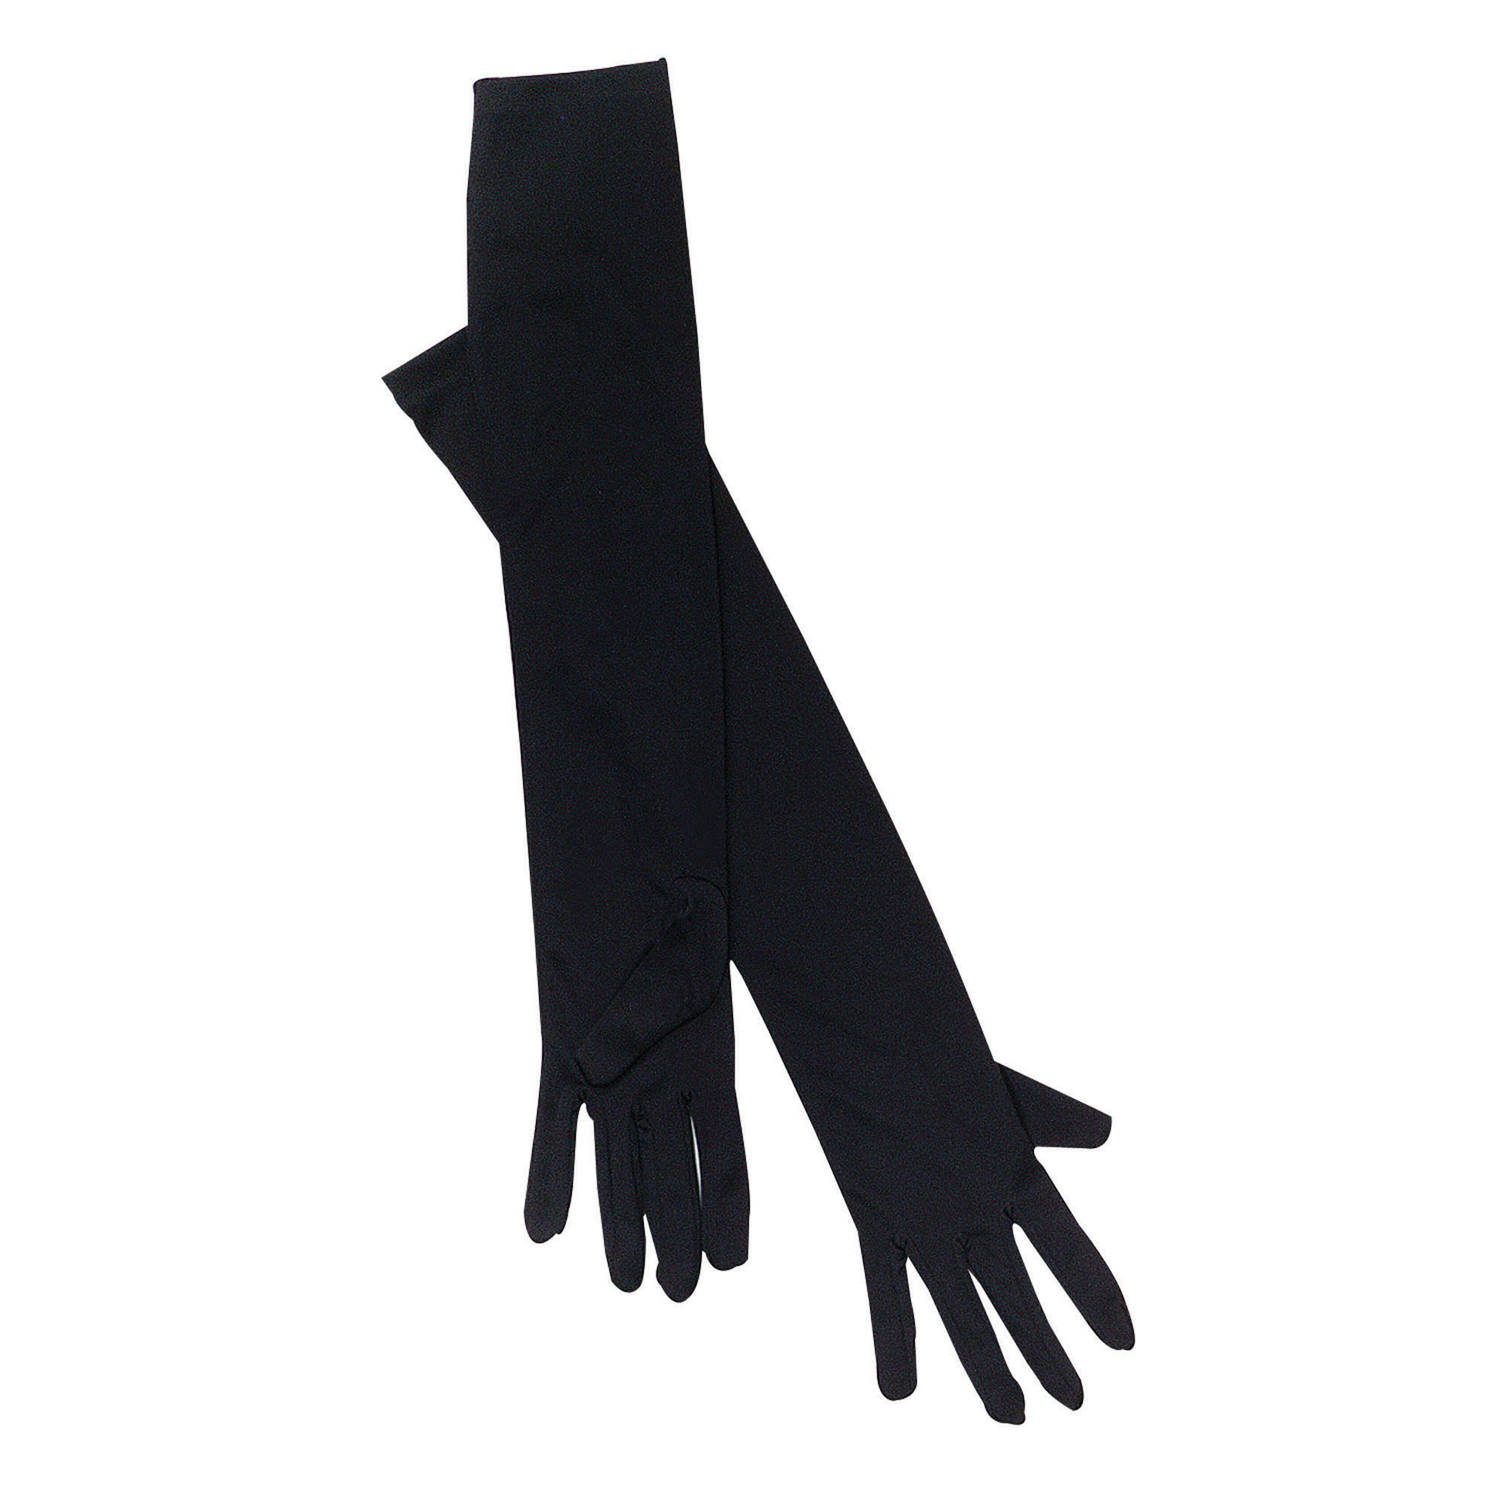 Rubies verkleed handschoenen voor dames - zwart - one size - lang model